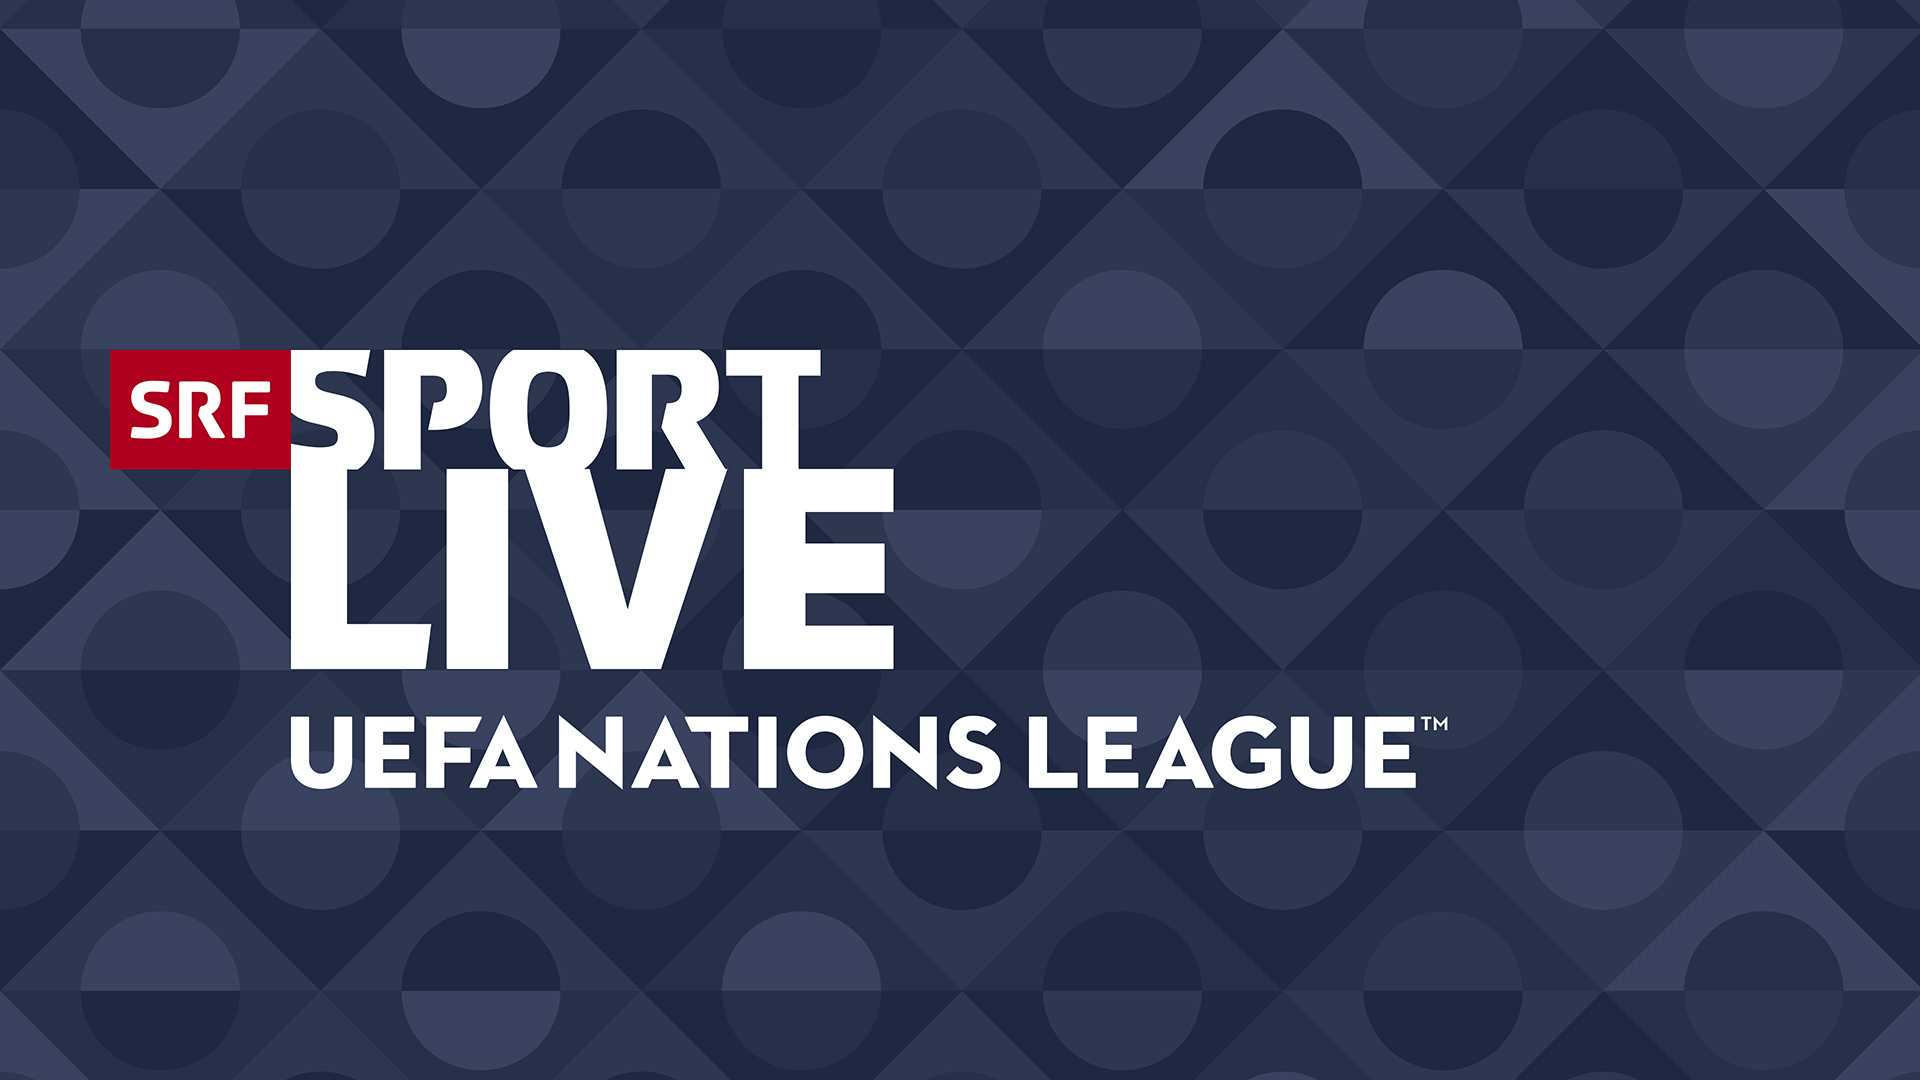 UEFA Nations League SRF zeigt neu Livespiele der Top-Nationen